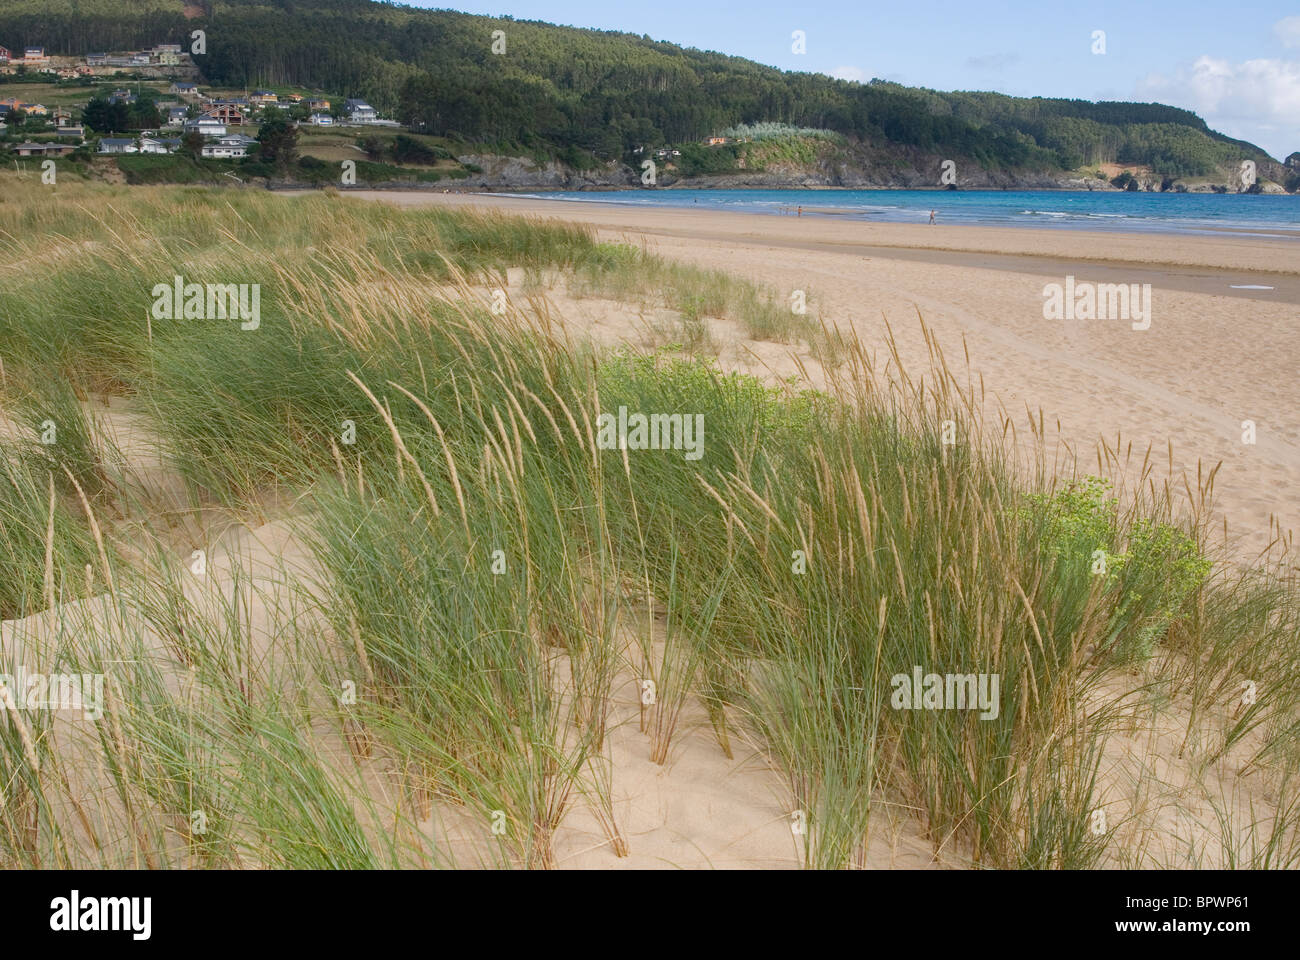 European Marram Grass or European Beachgrass (Ammophila arenaria) on sand dunes in Abrela beach, Vicedo, Lugo, Galicia, Spain. Stock Photo